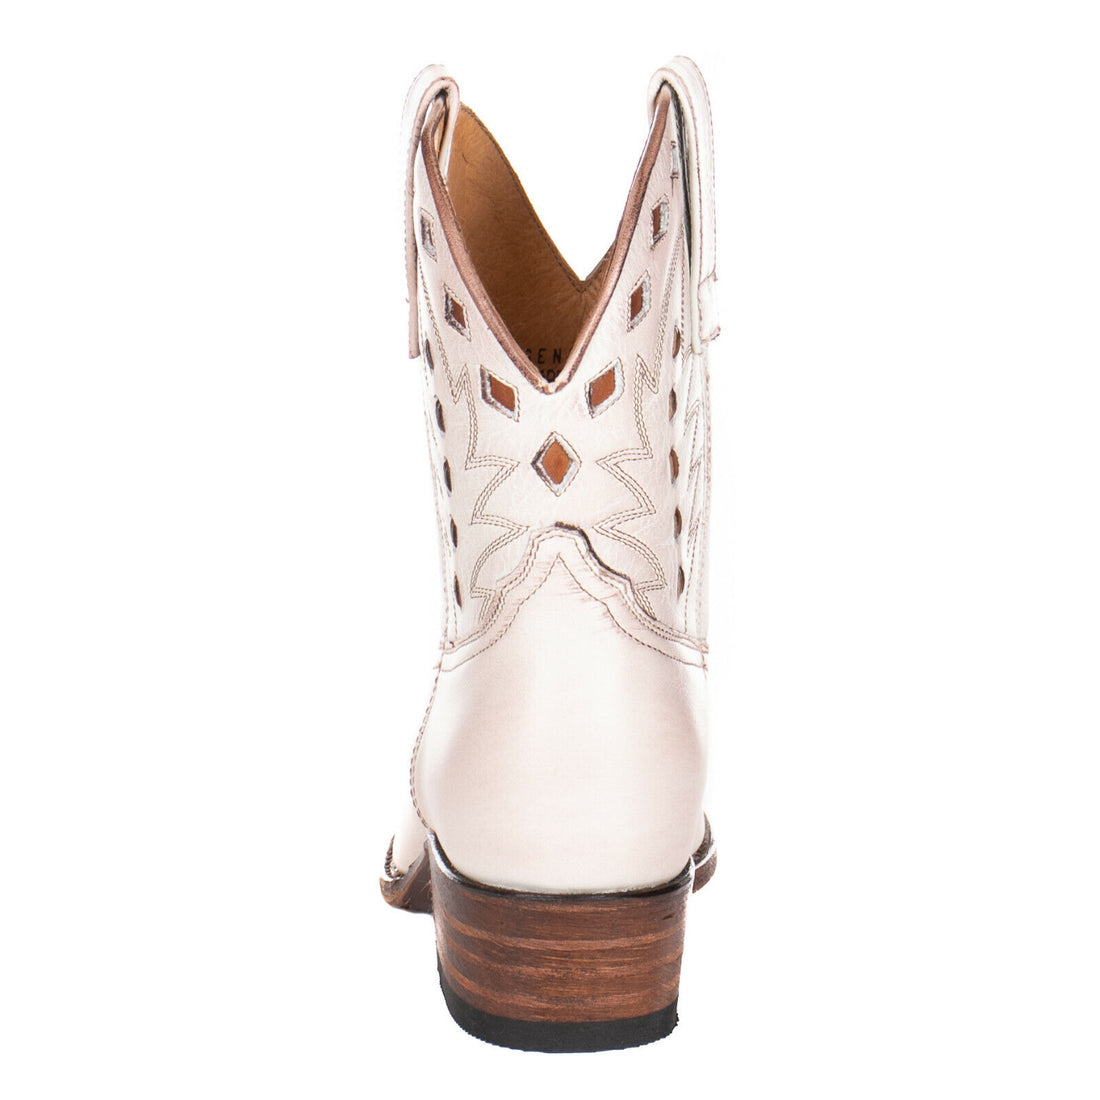 Sendra Boots 17156 Salvaje Suave Cowboy Western Stiefelette Bootie Damen Weiß